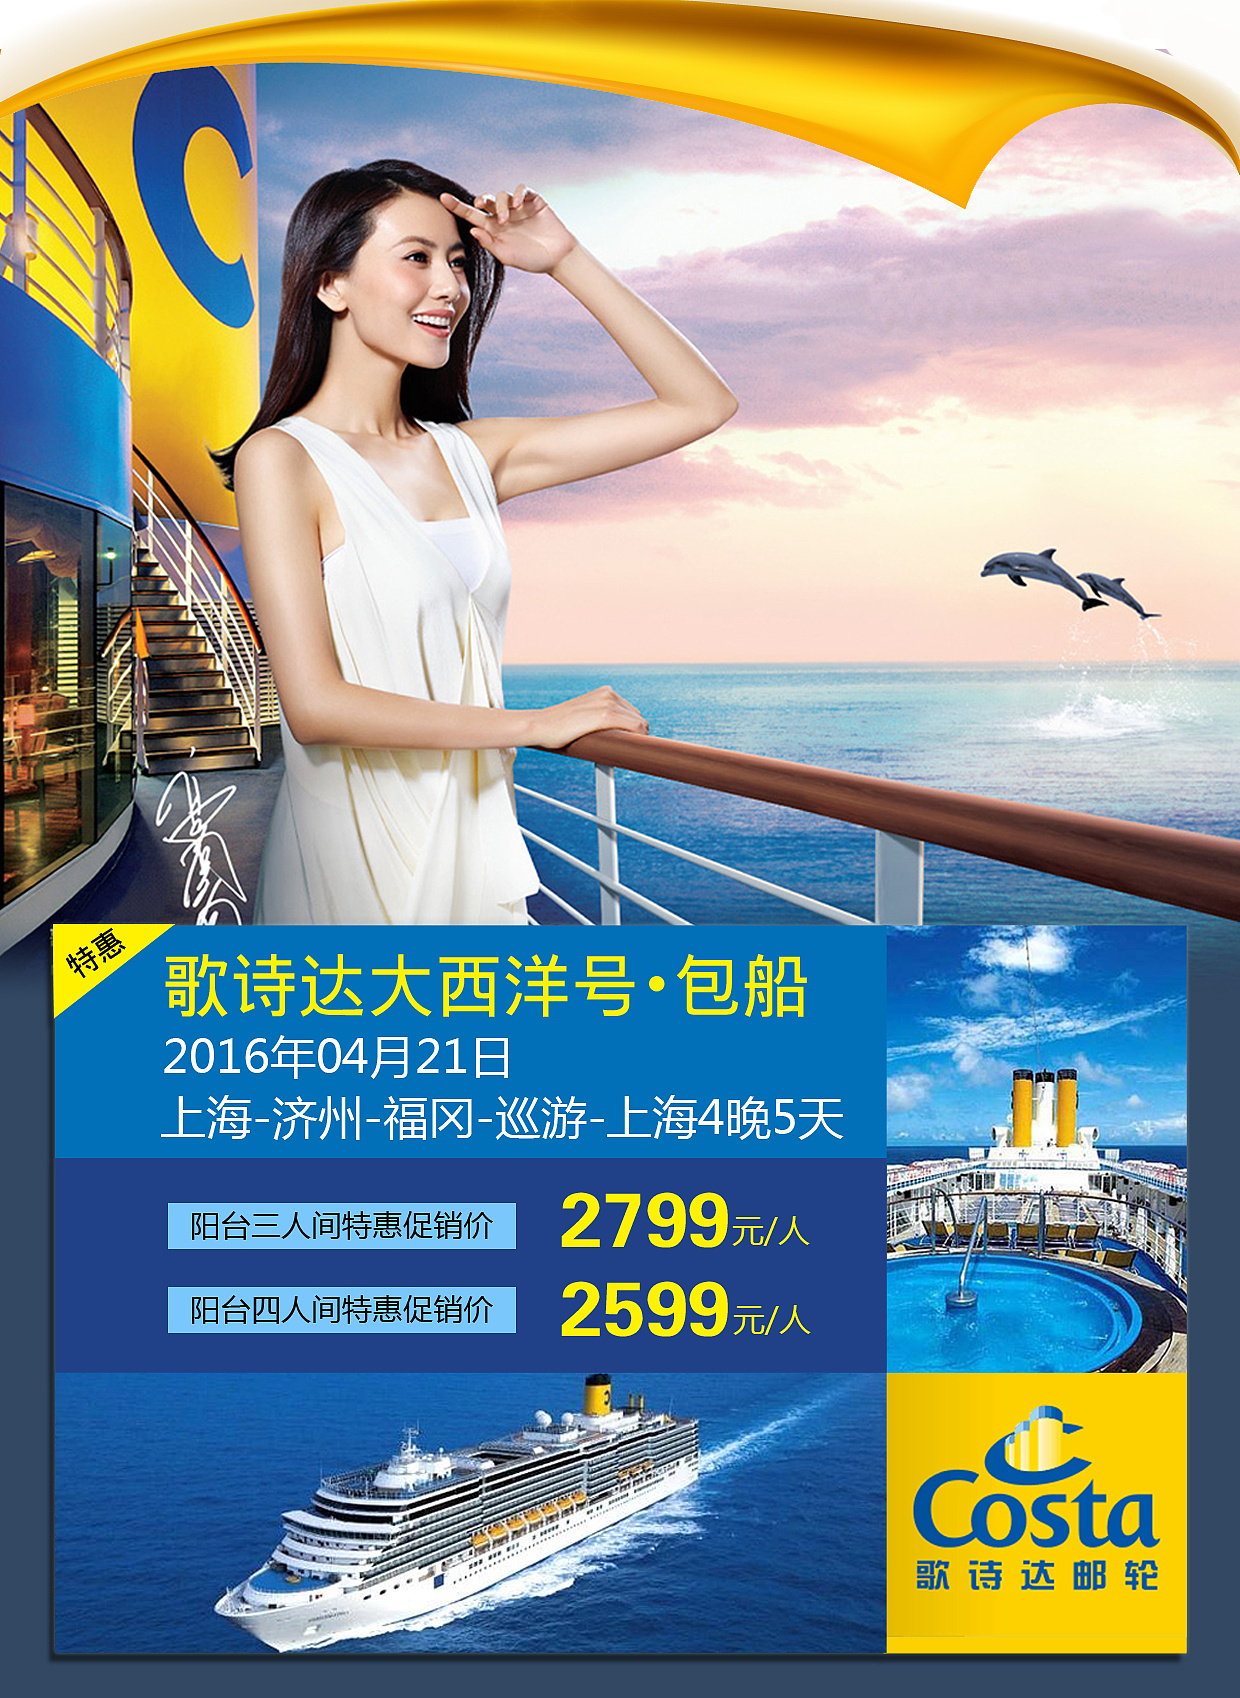 歌诗达邮轮宣布9月重启欧洲航线 | TTG China